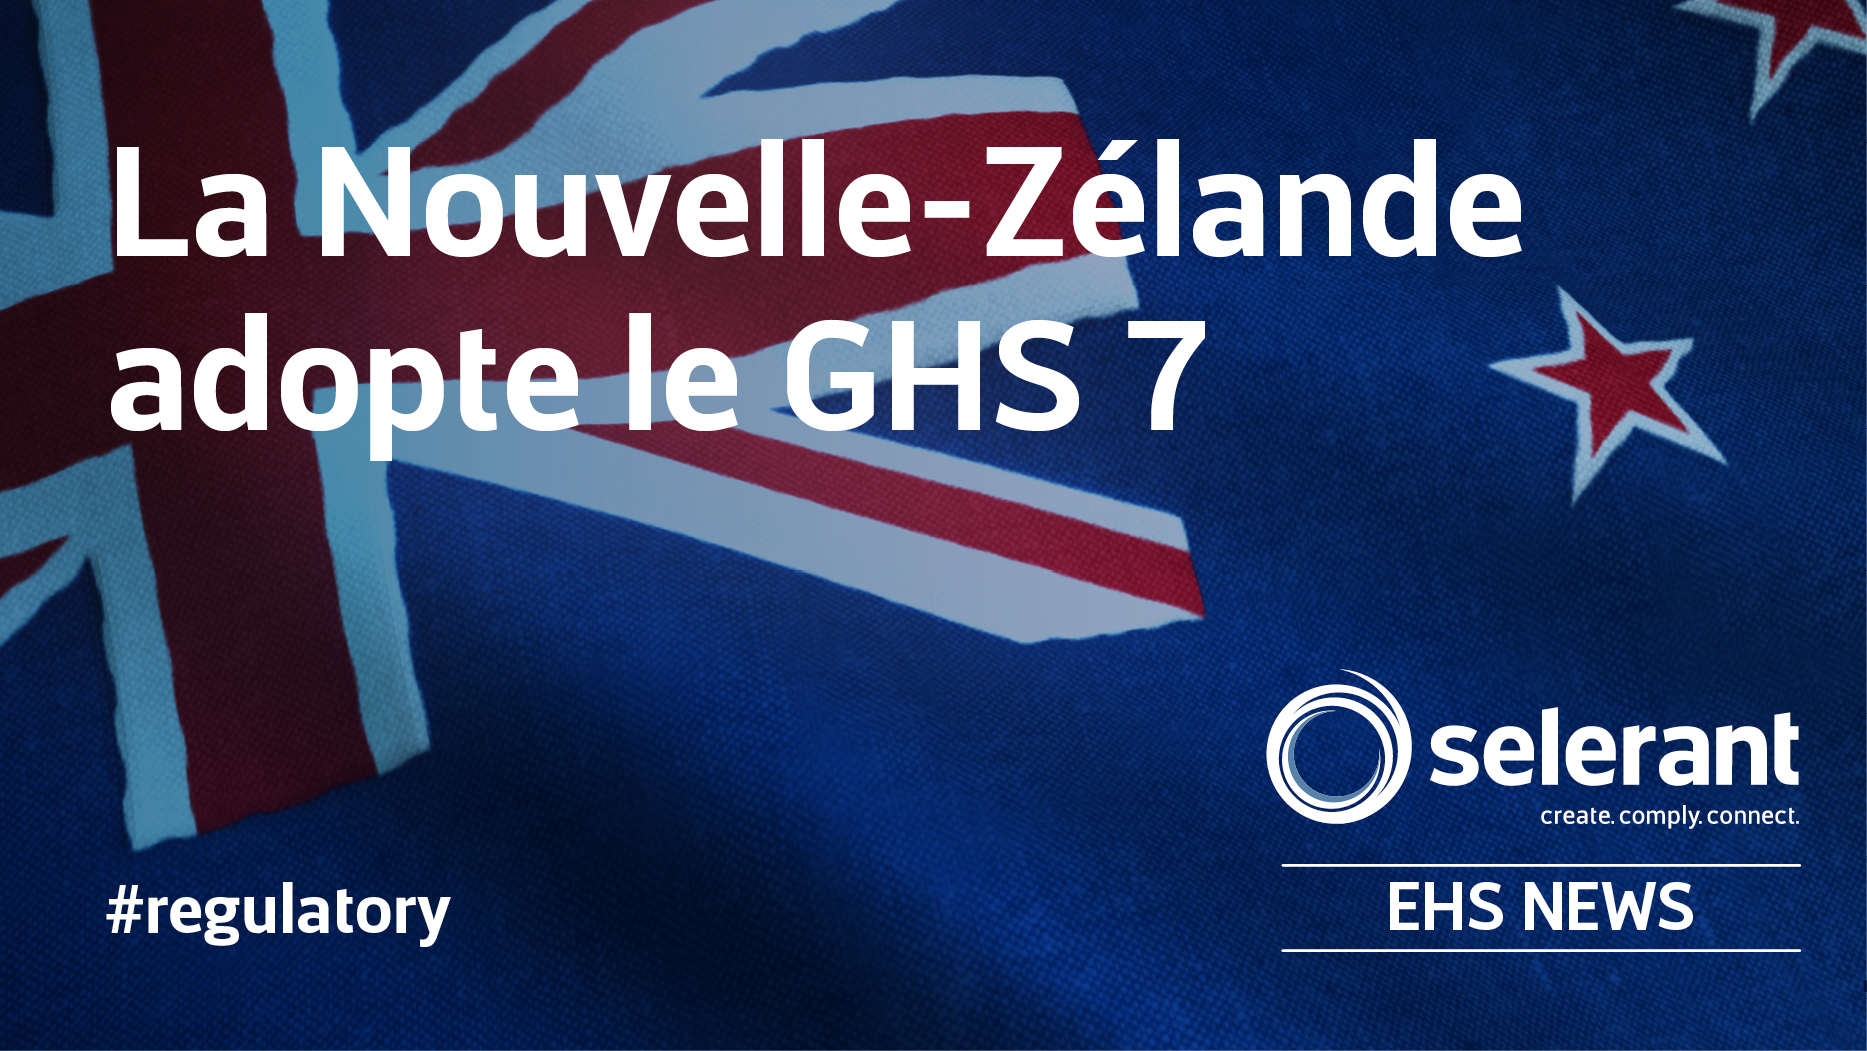 La Nouvelle-Zélande adopte le GHS 7